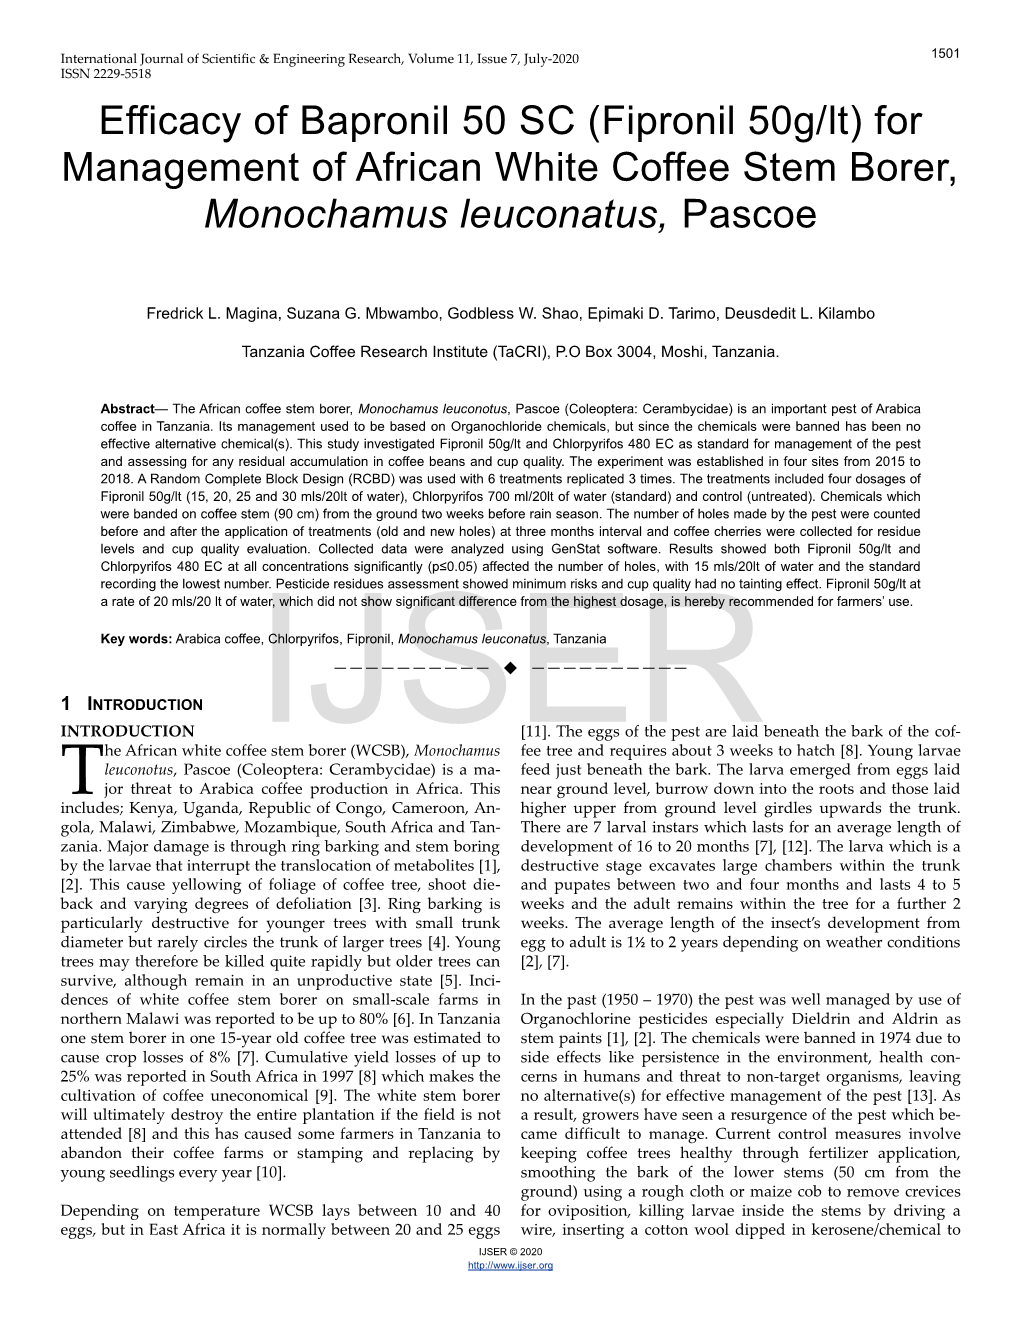 (Fipronil 50G/Lt) for Management of African White Coffee Stem Borer, Monochamus Leuconatus, Pascoe